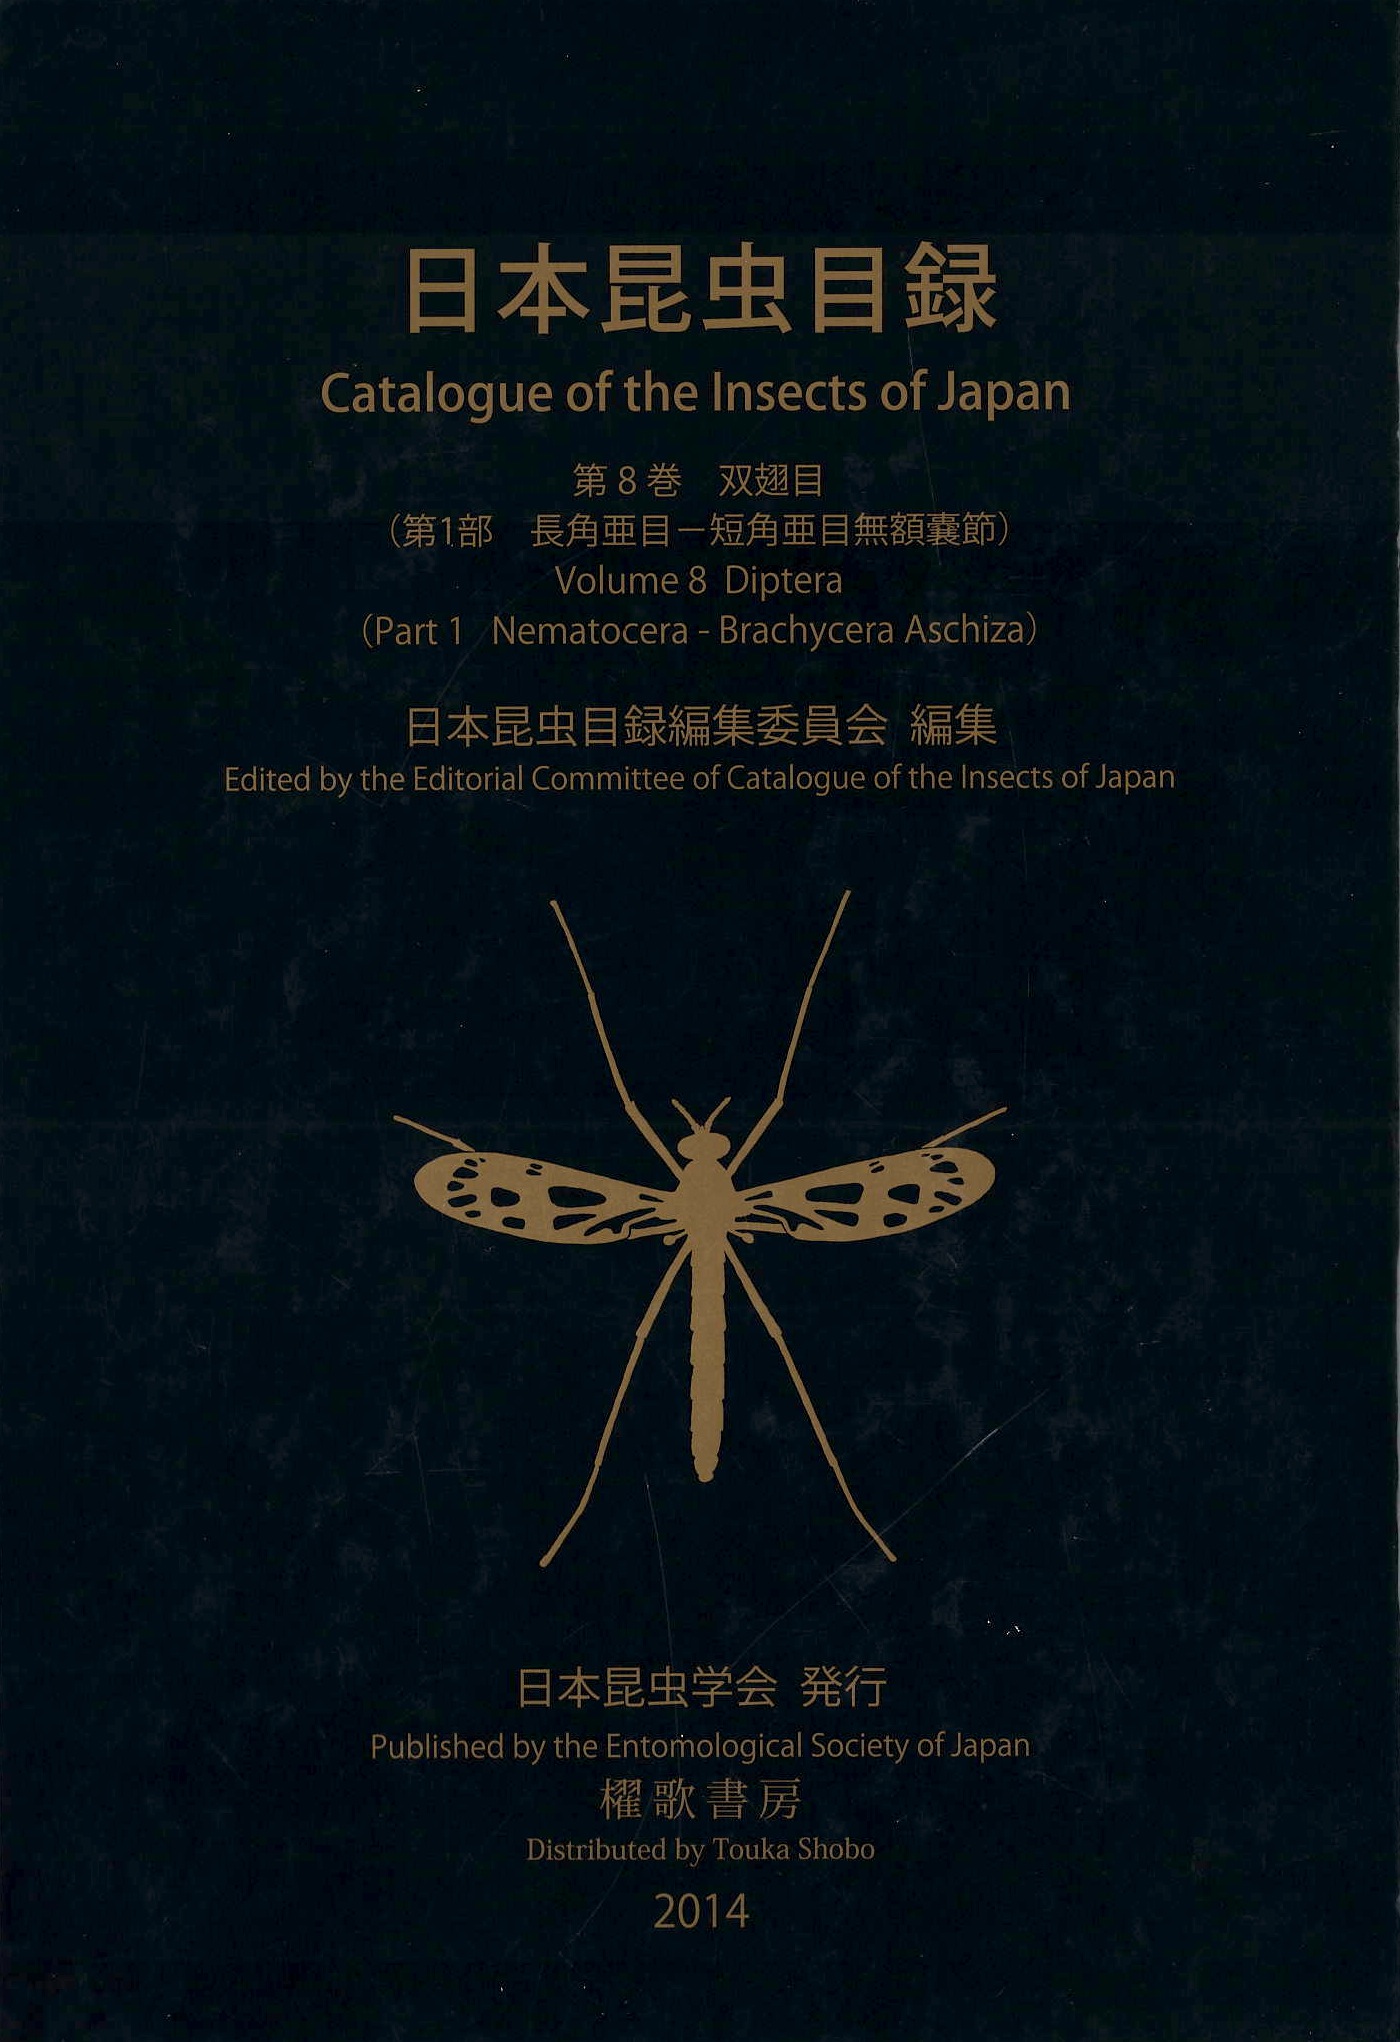 日本昆虫目録Vol.8 第1部 長角亜目-短角亜目無額嚢節